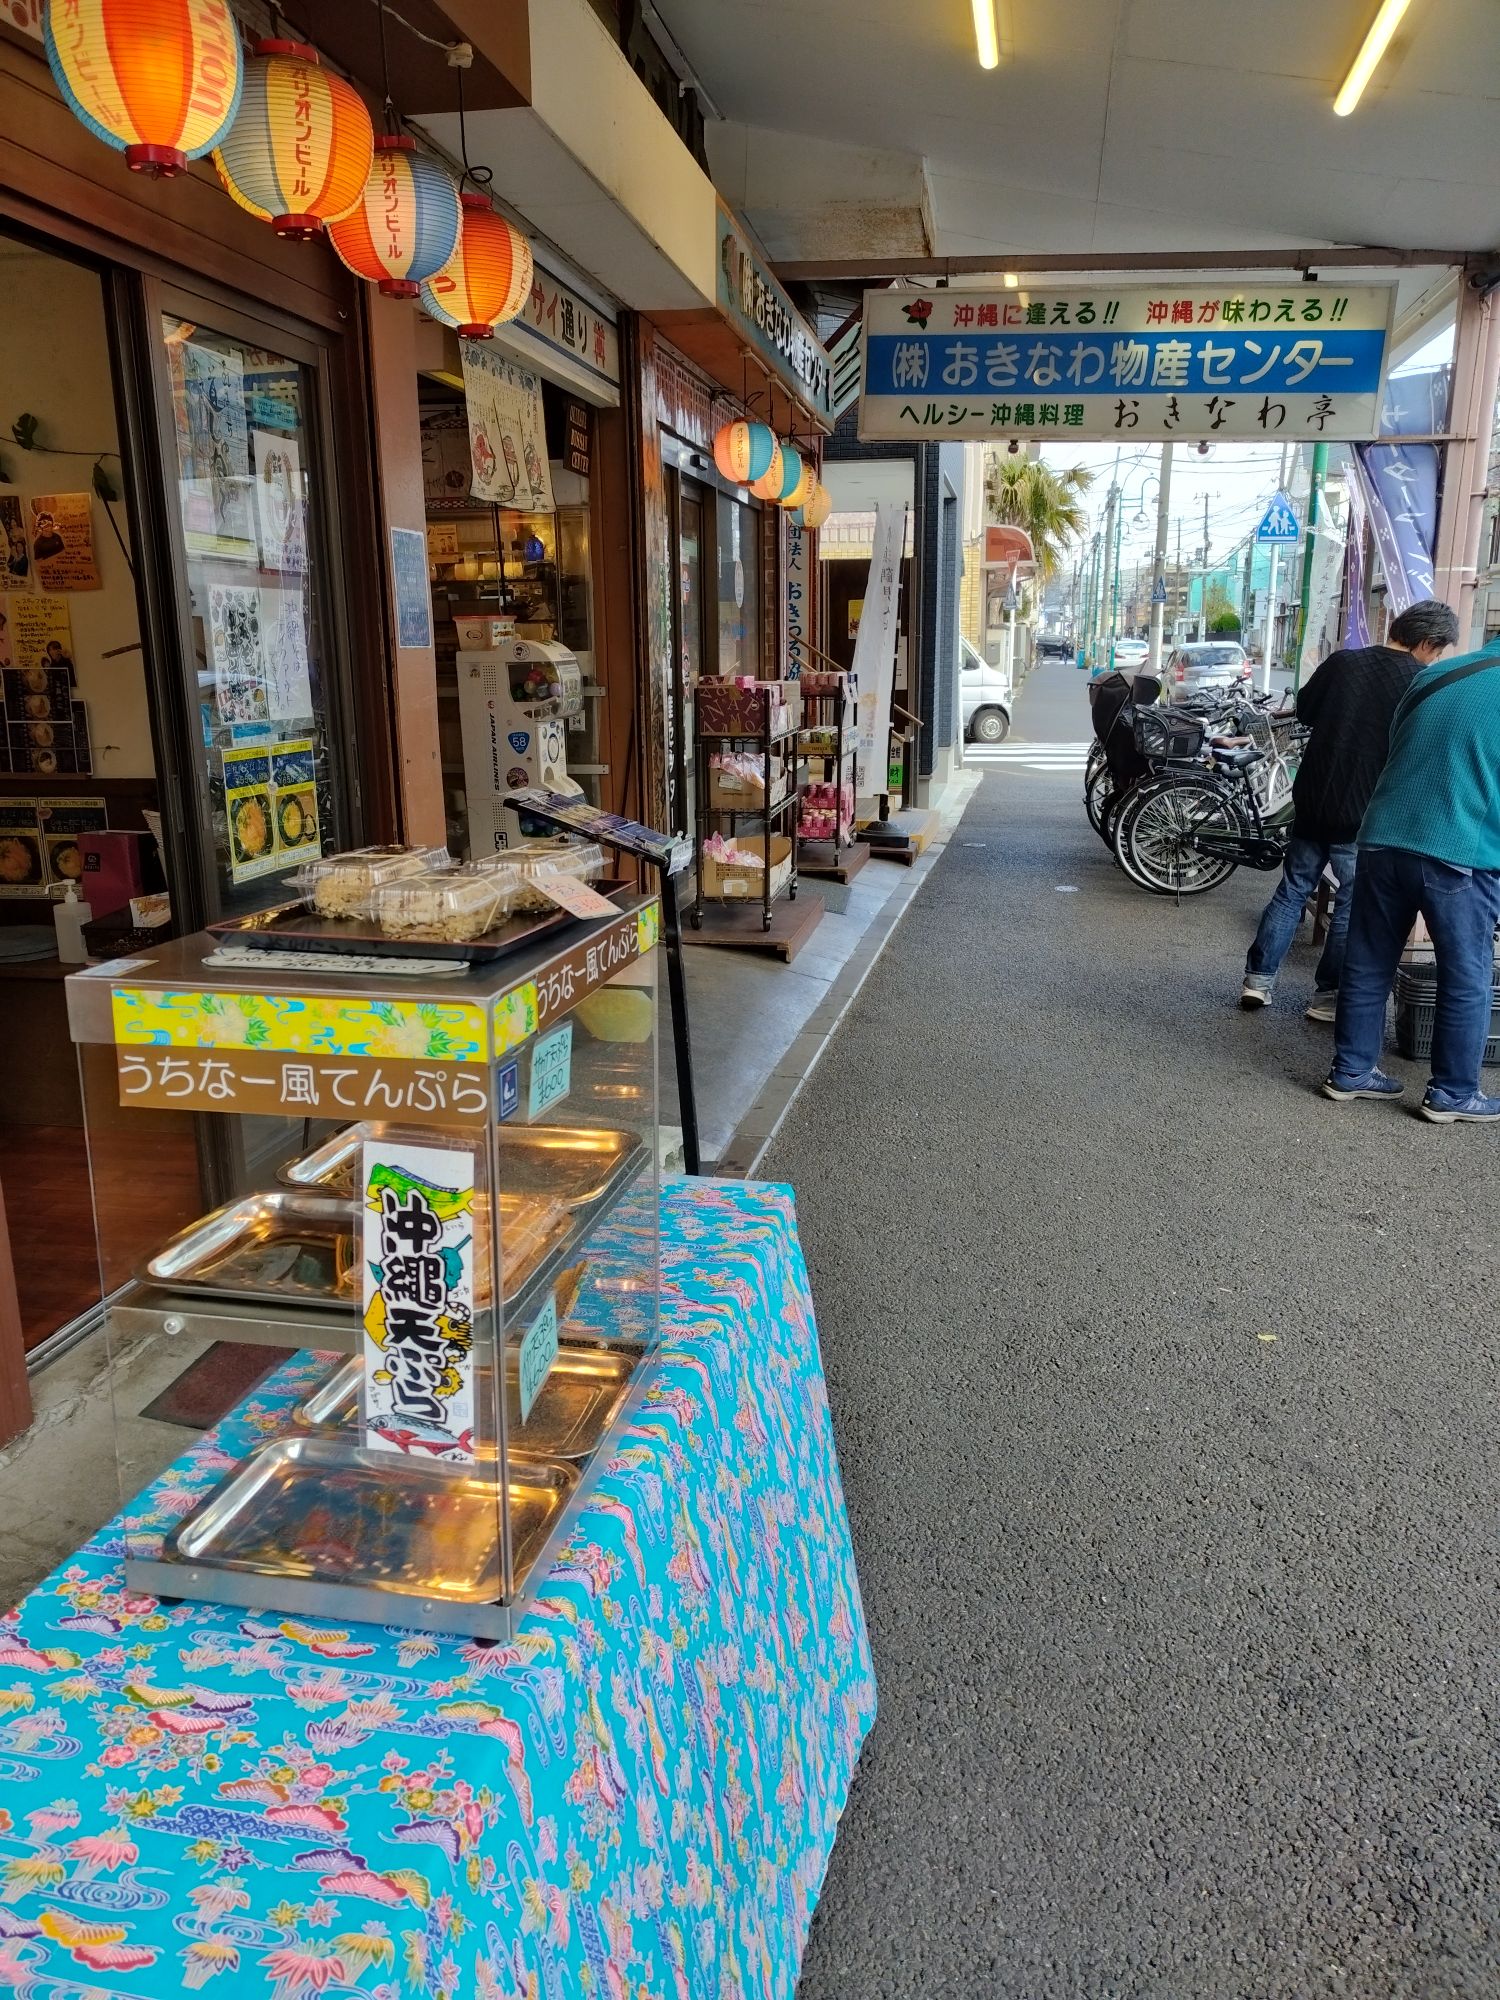 鶴見は沖縄関連のお店やショップが多いことで知られている